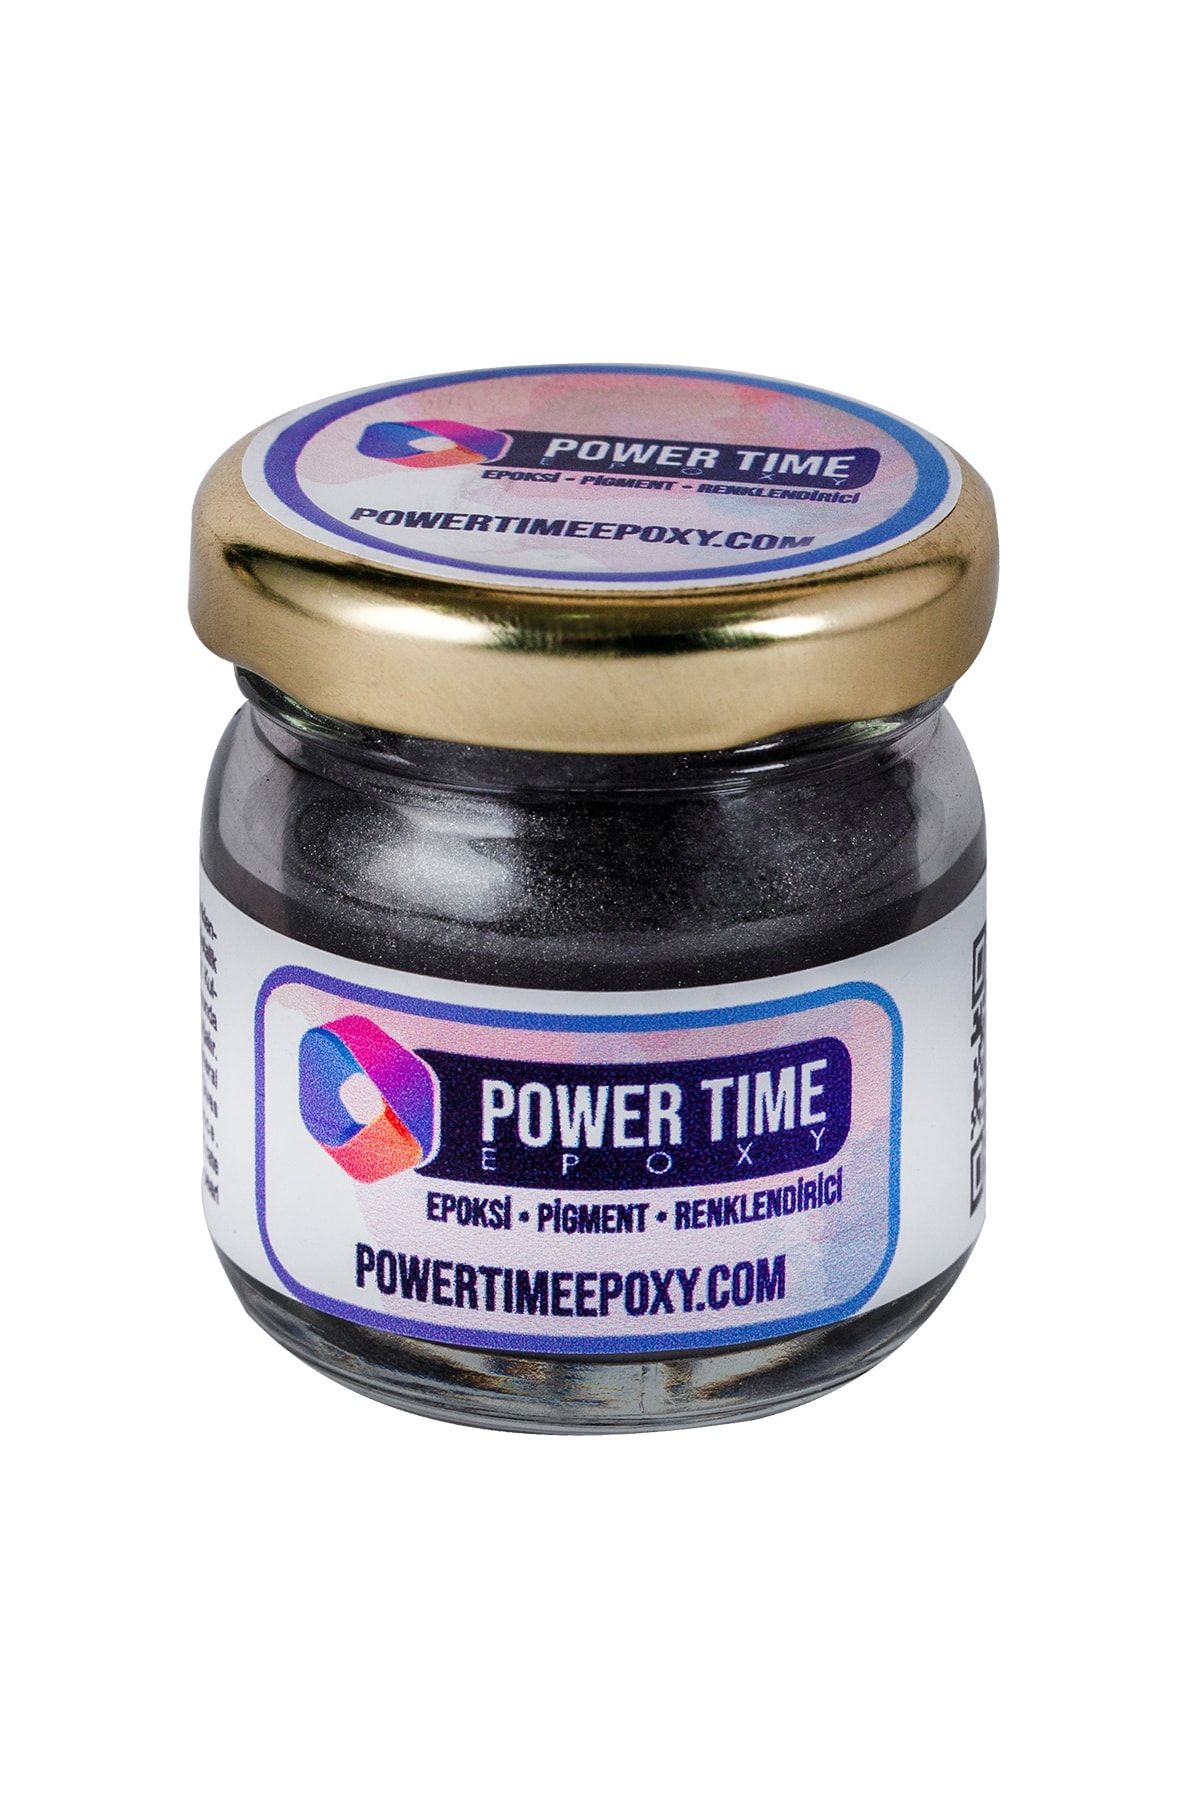 POWER TIME EPOXY Sedefli Metalik Toz Pigment Boya / Siyah Gümüş / Epoksi Için